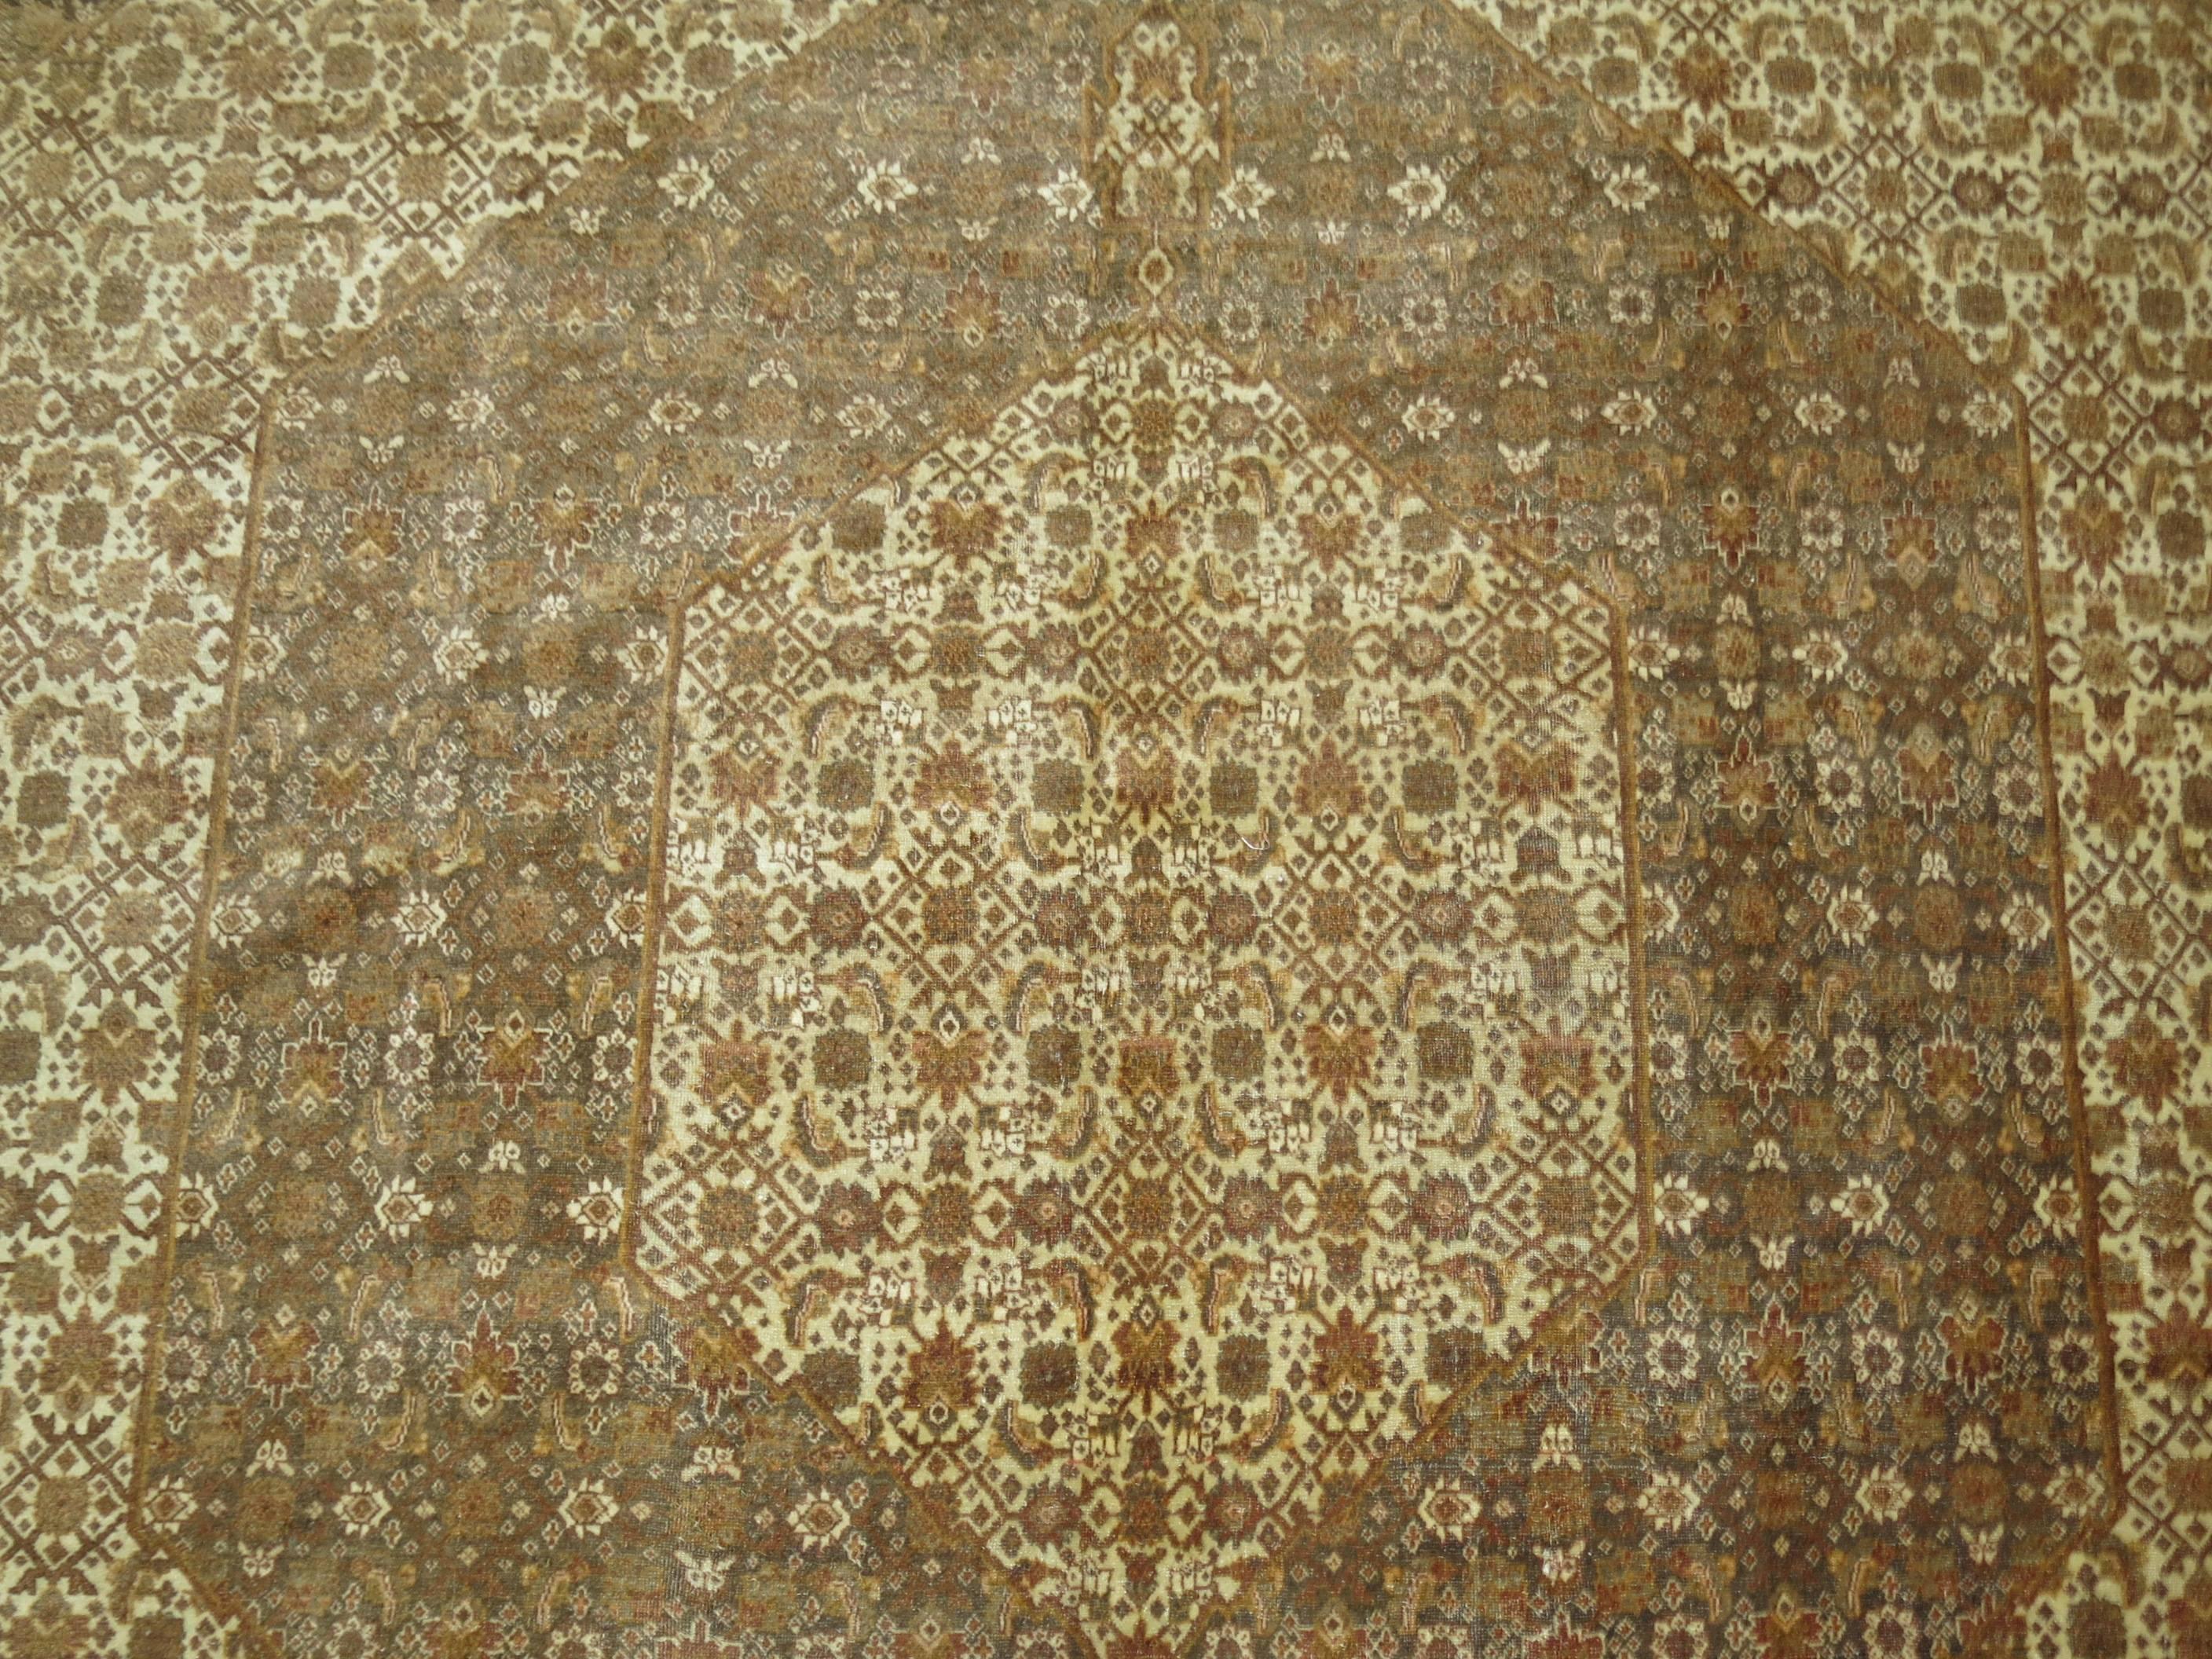 Persischer Täbriz aus dem frühen 20. Jahrhundert mit klassischem Herati-Motiv und zeitlosem Medaillon- und Bordürenmuster. Vorwiegend braune und orangefarbene Akzente.

